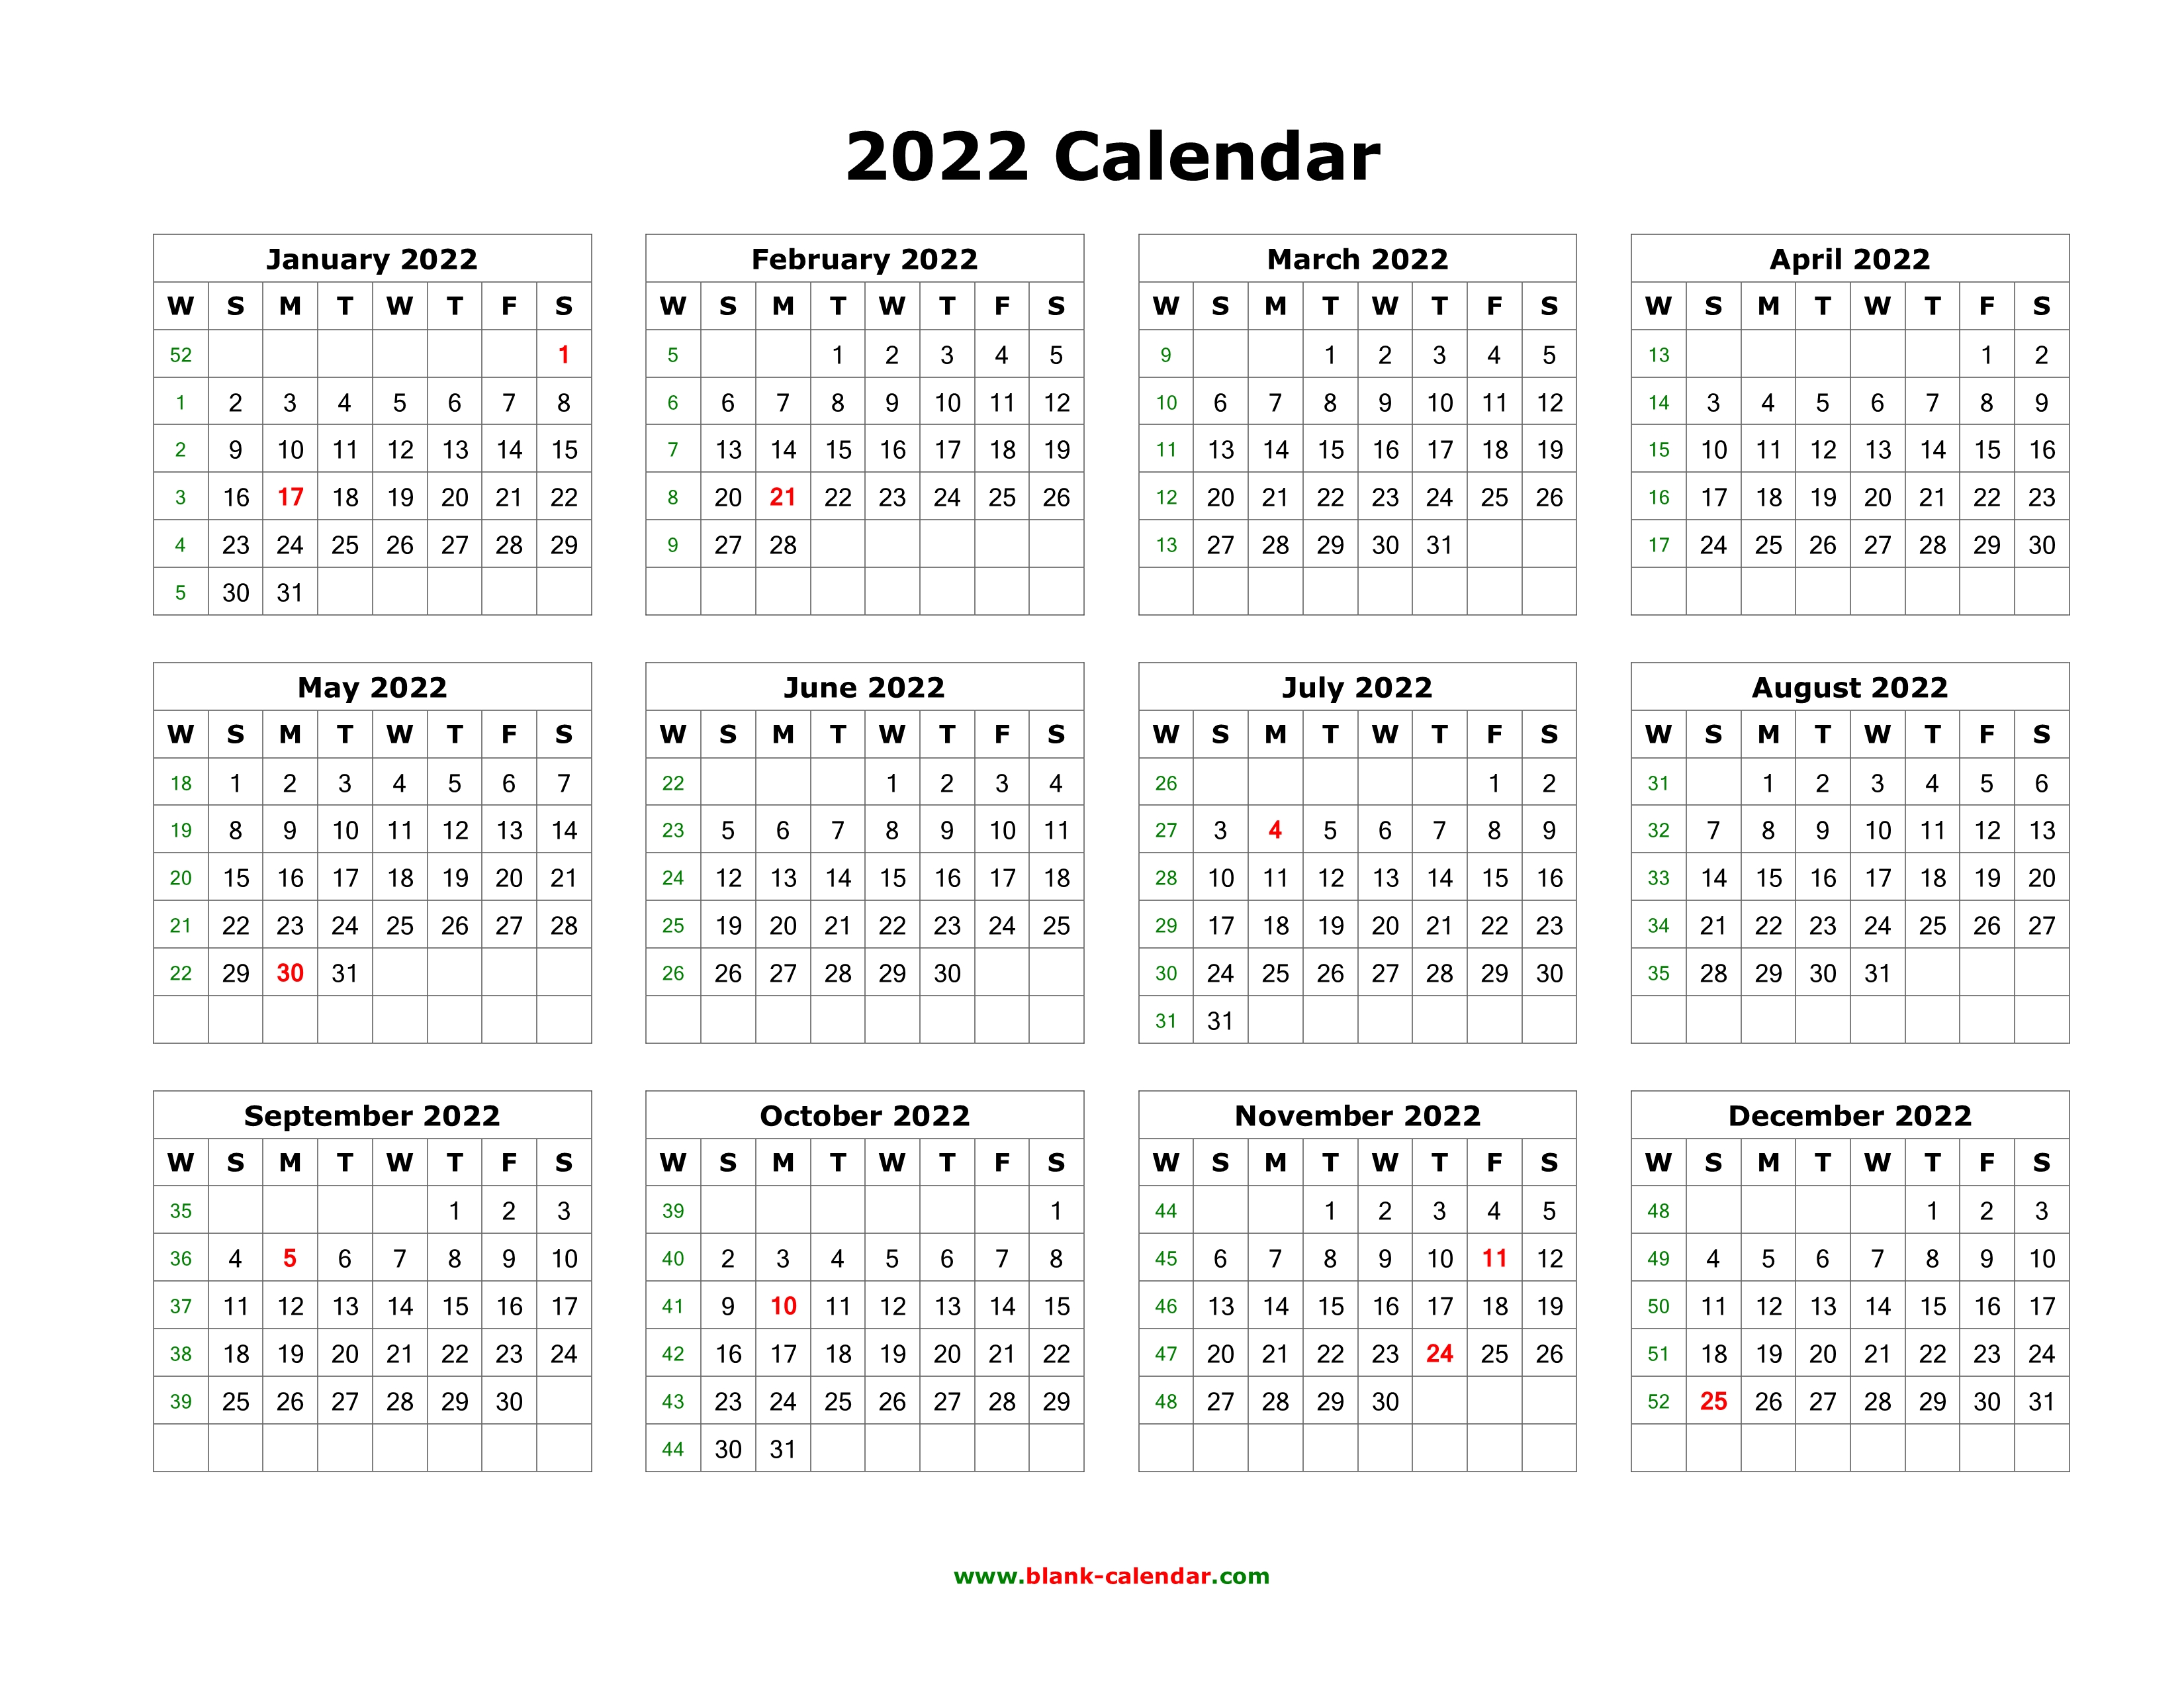 Last Tuesday Calendar 2022